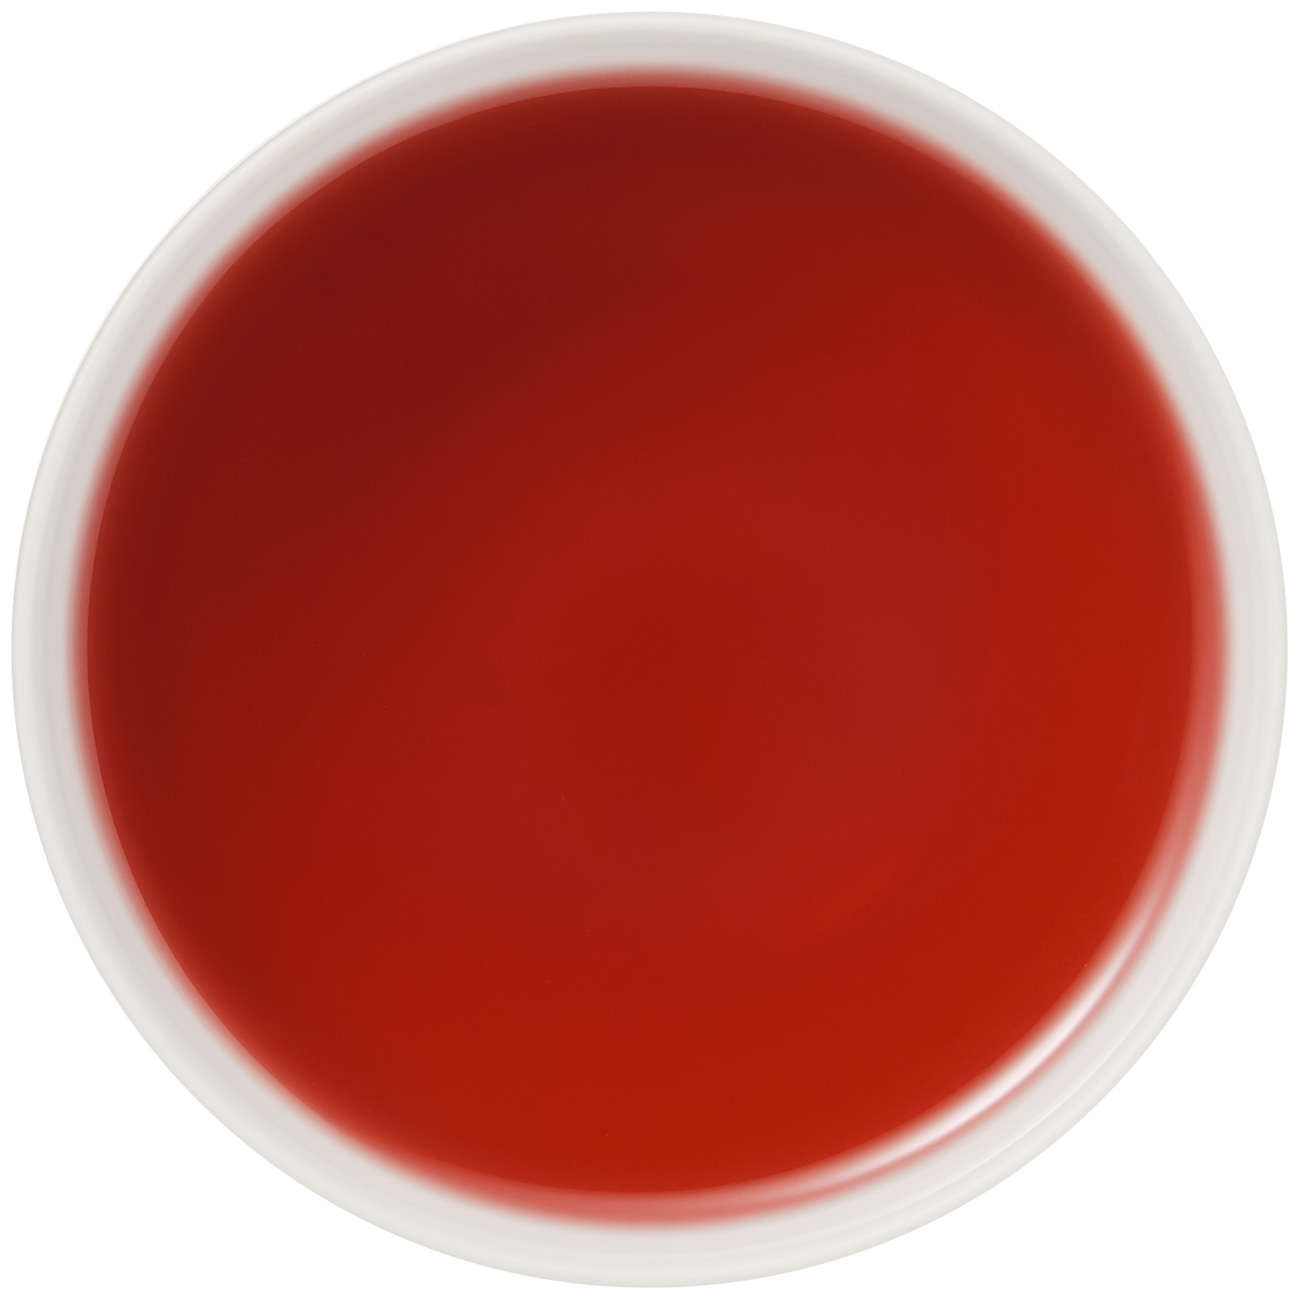 1kg Drachenfrucht-Feige loser aromatisierter Rooibos Tee